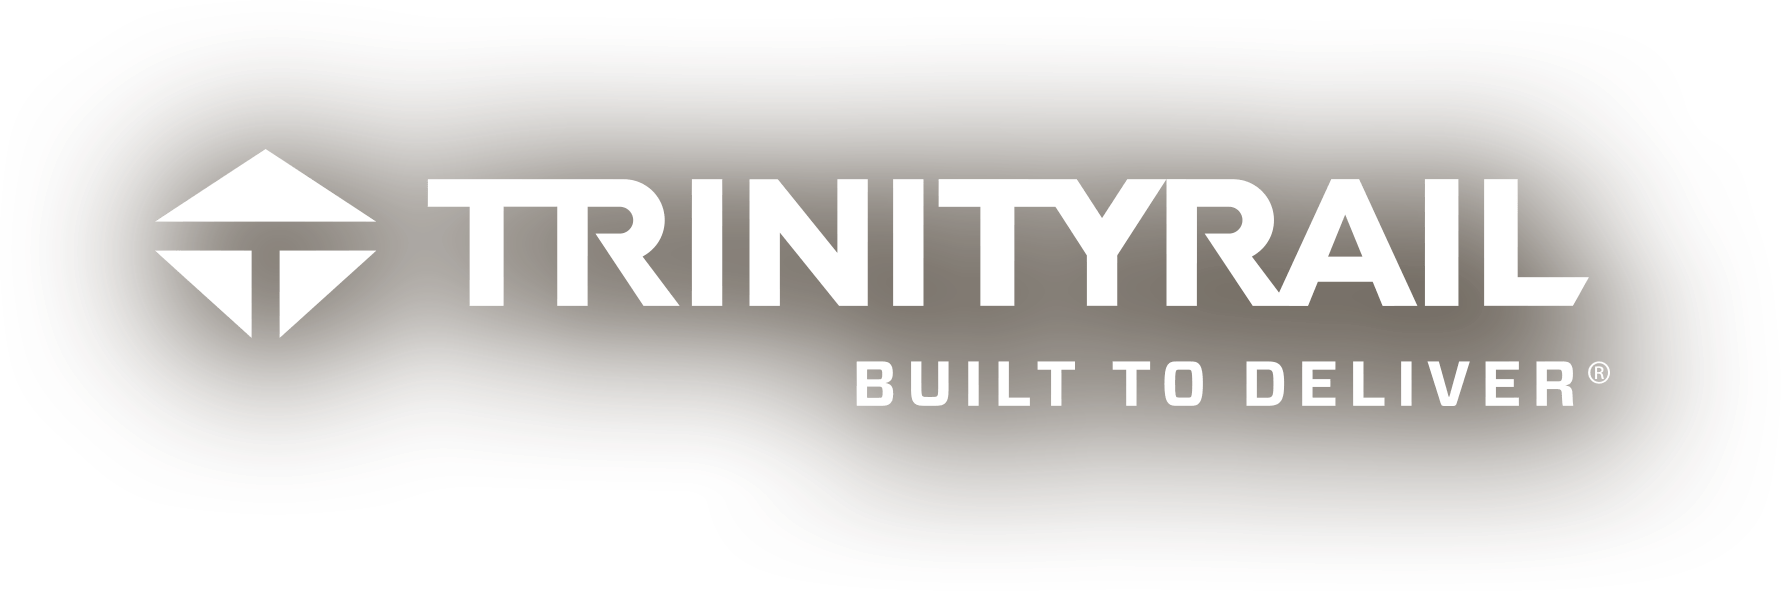 https://www.trinityrail.com/wp-content/uploads/2020/05/TrinityRail_Logo_CMYK_Black_Tagline.png